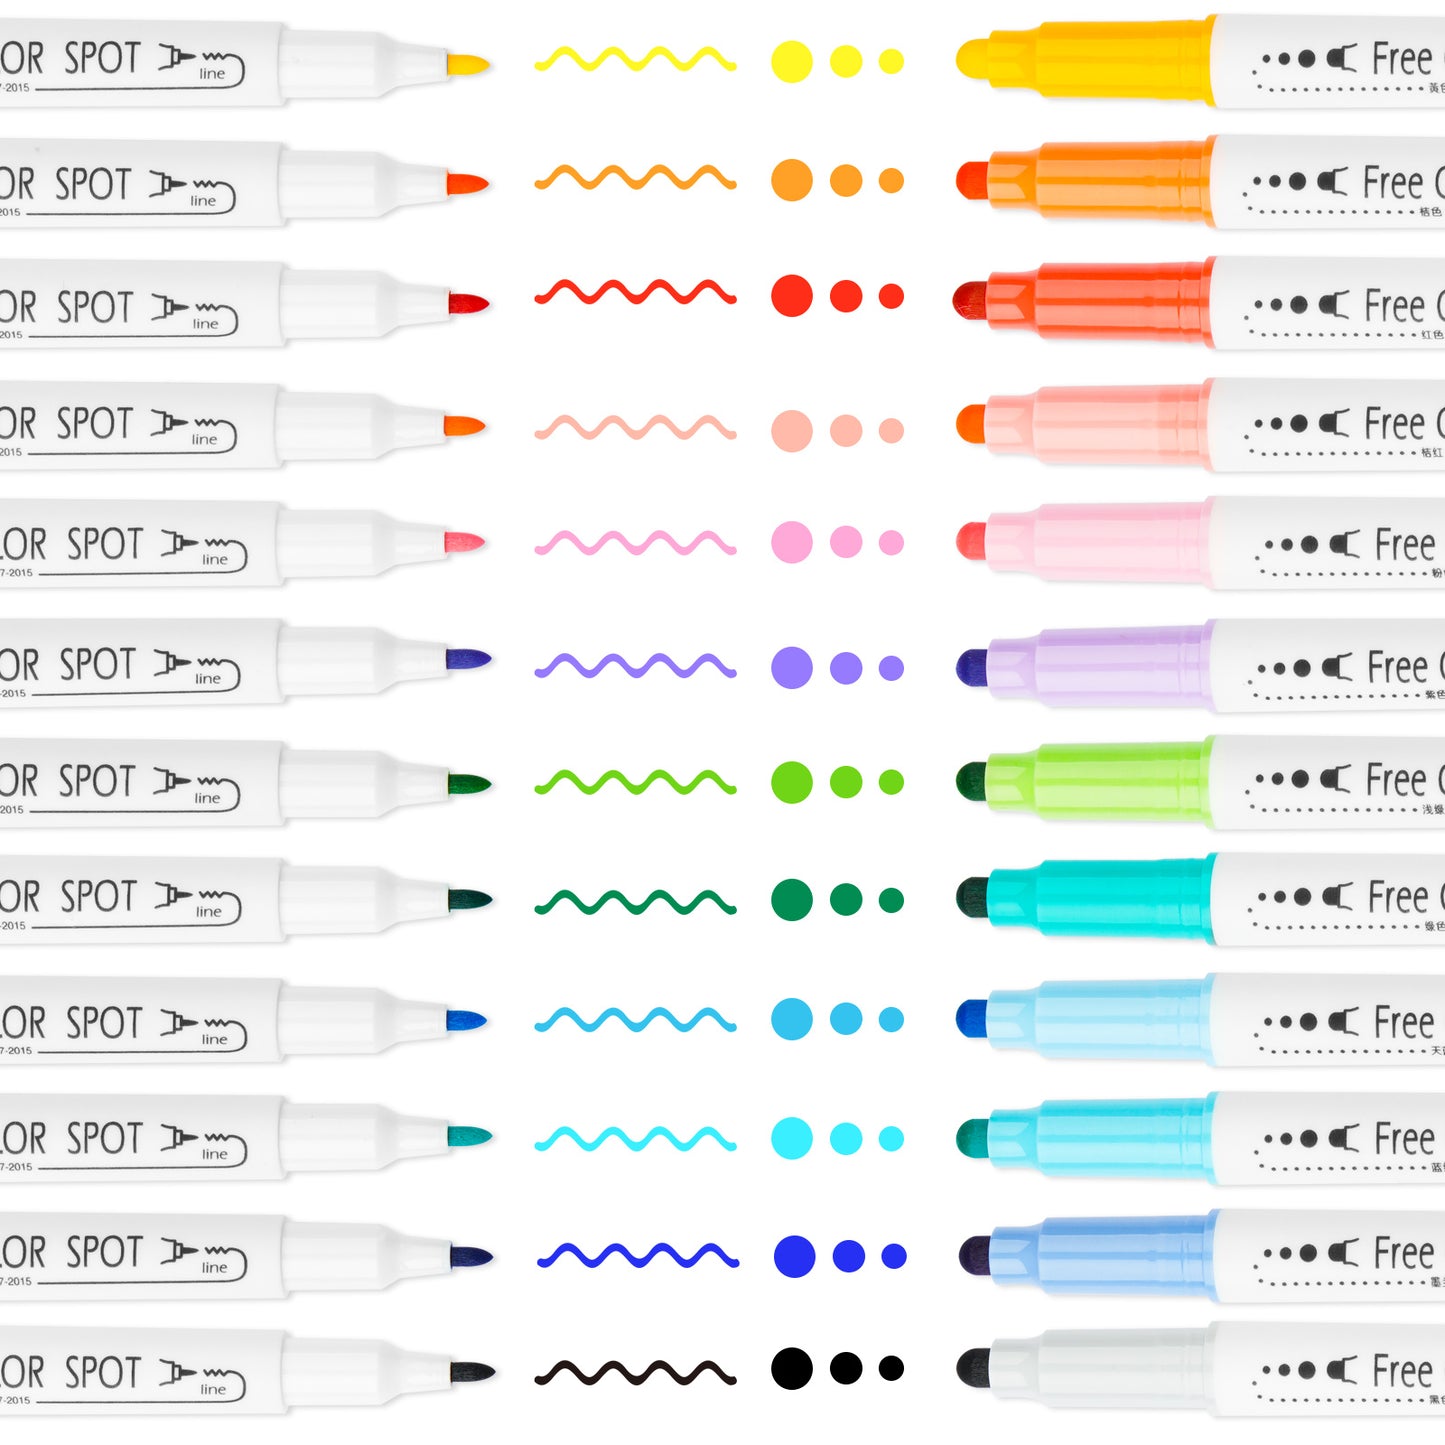 Dual Tip DOT Marker Pens 12 Colors Round DOT Fiber Fine Tip for Art, Coloring,